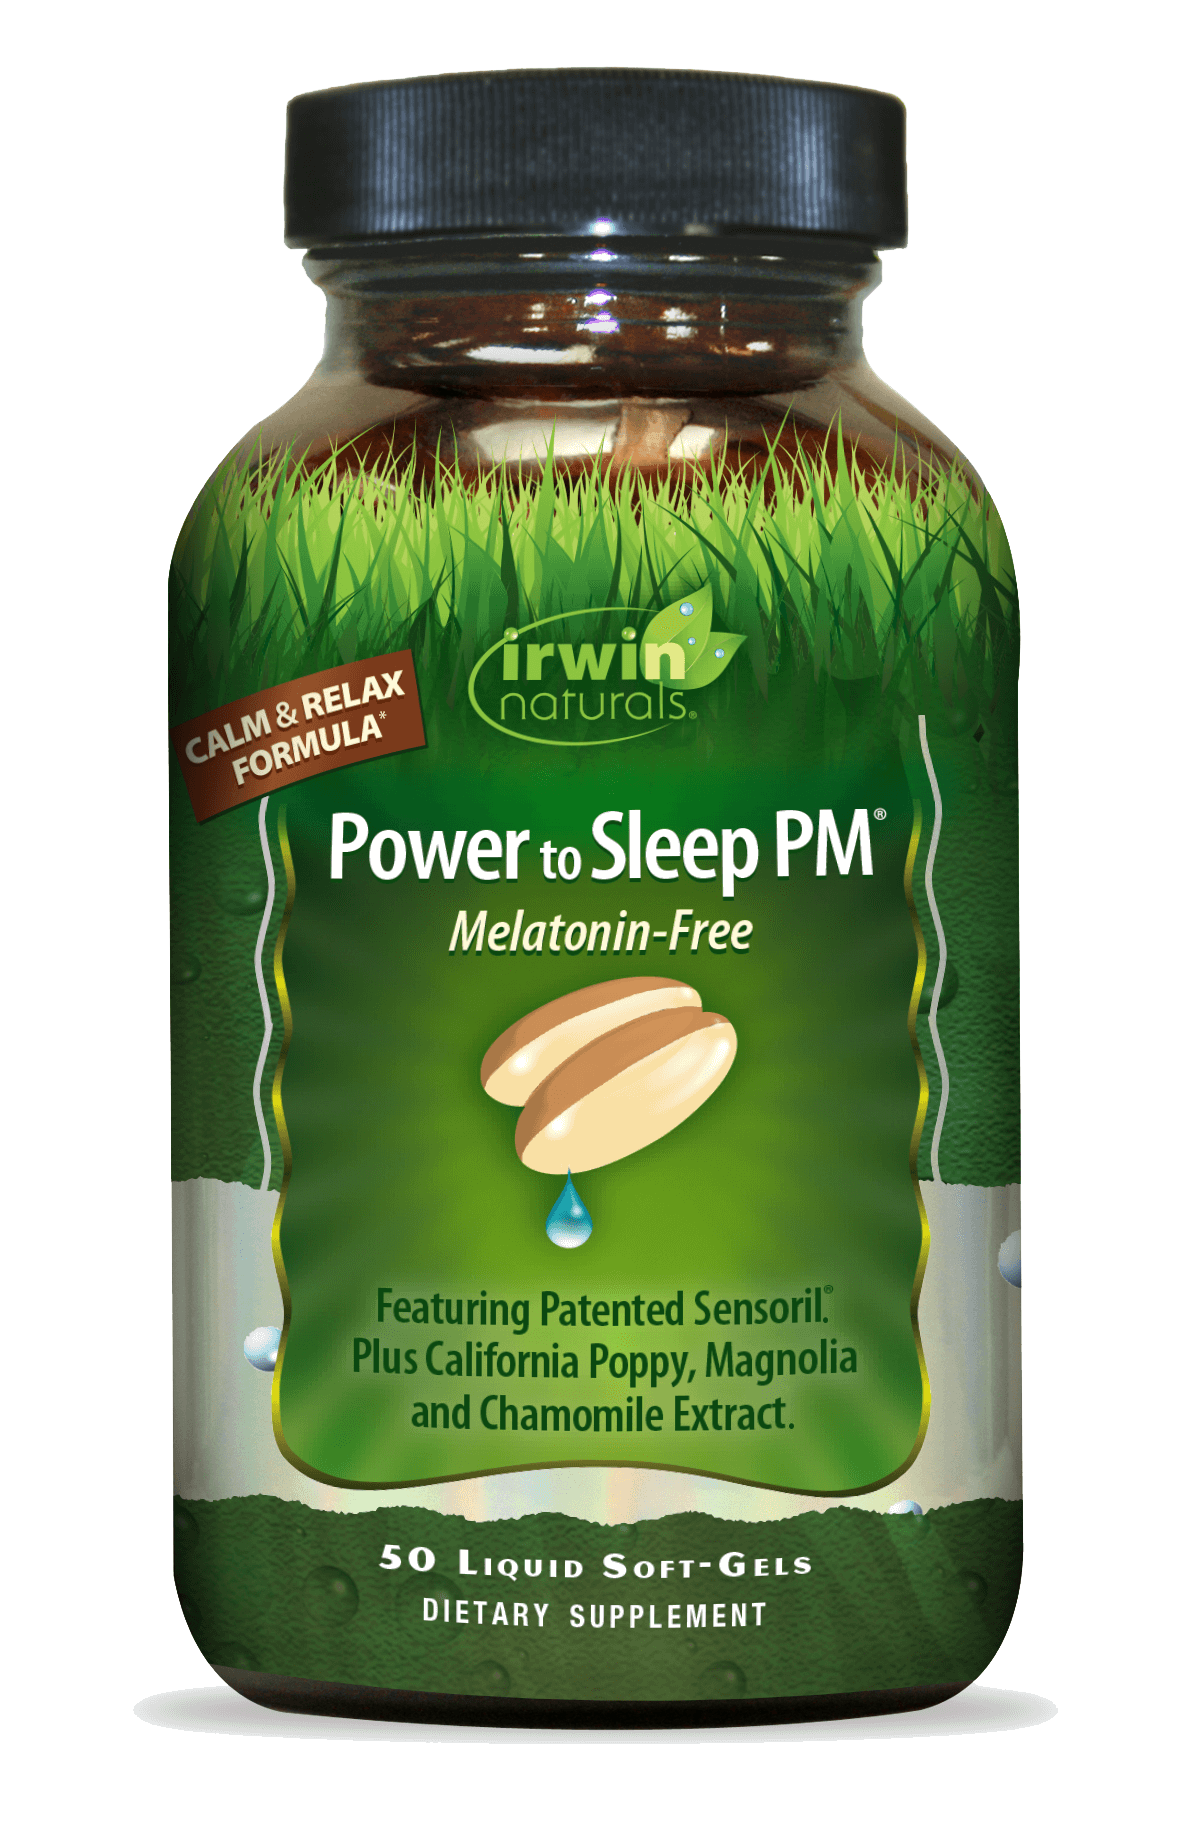 Power to Sleep PM Melatonin Free by Irwin Naturals